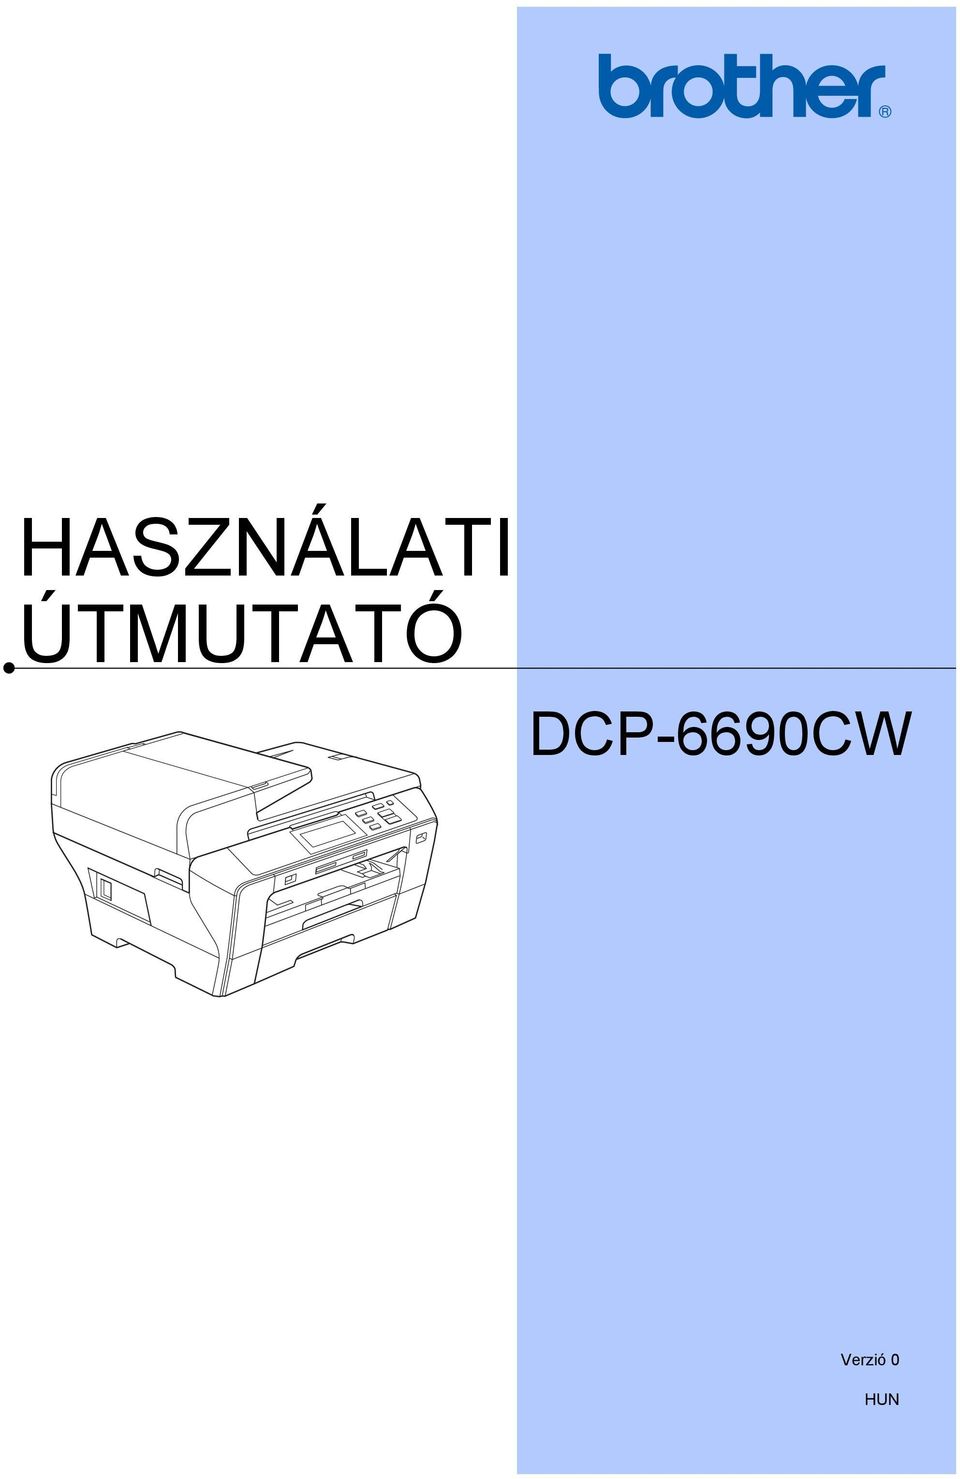 DCP-6690CW